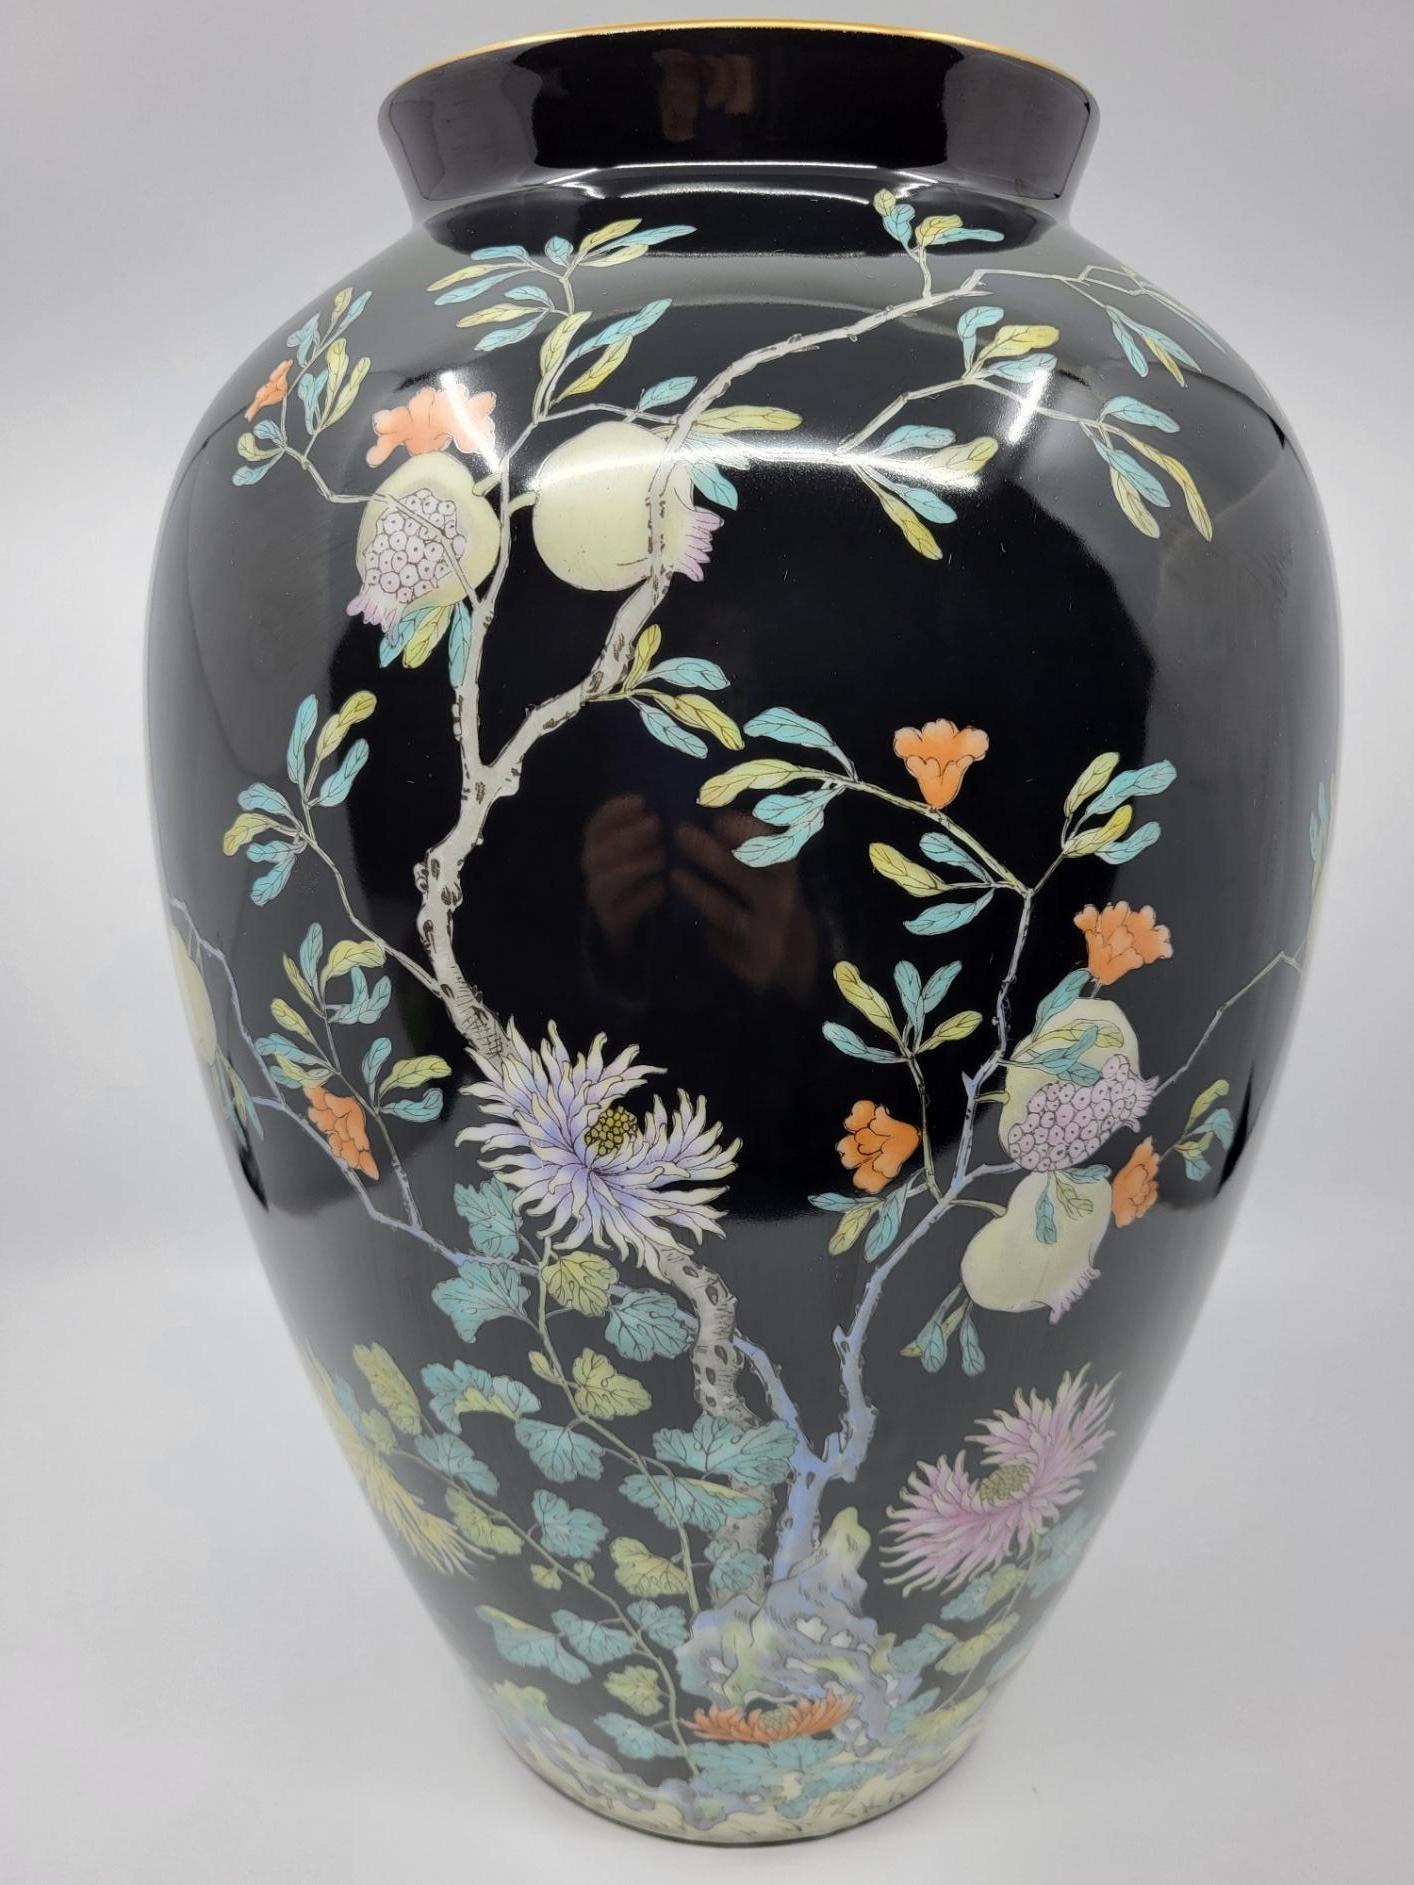 Très grand vase des années 1960, en céramique de Bavière, qui fut transformé en pied de lampe par un professionnel ( petit trou au fond pour pouvoir passer le câble électrique).Il suffit juste de le recâbler.
 Le fond de couleur noir est richement